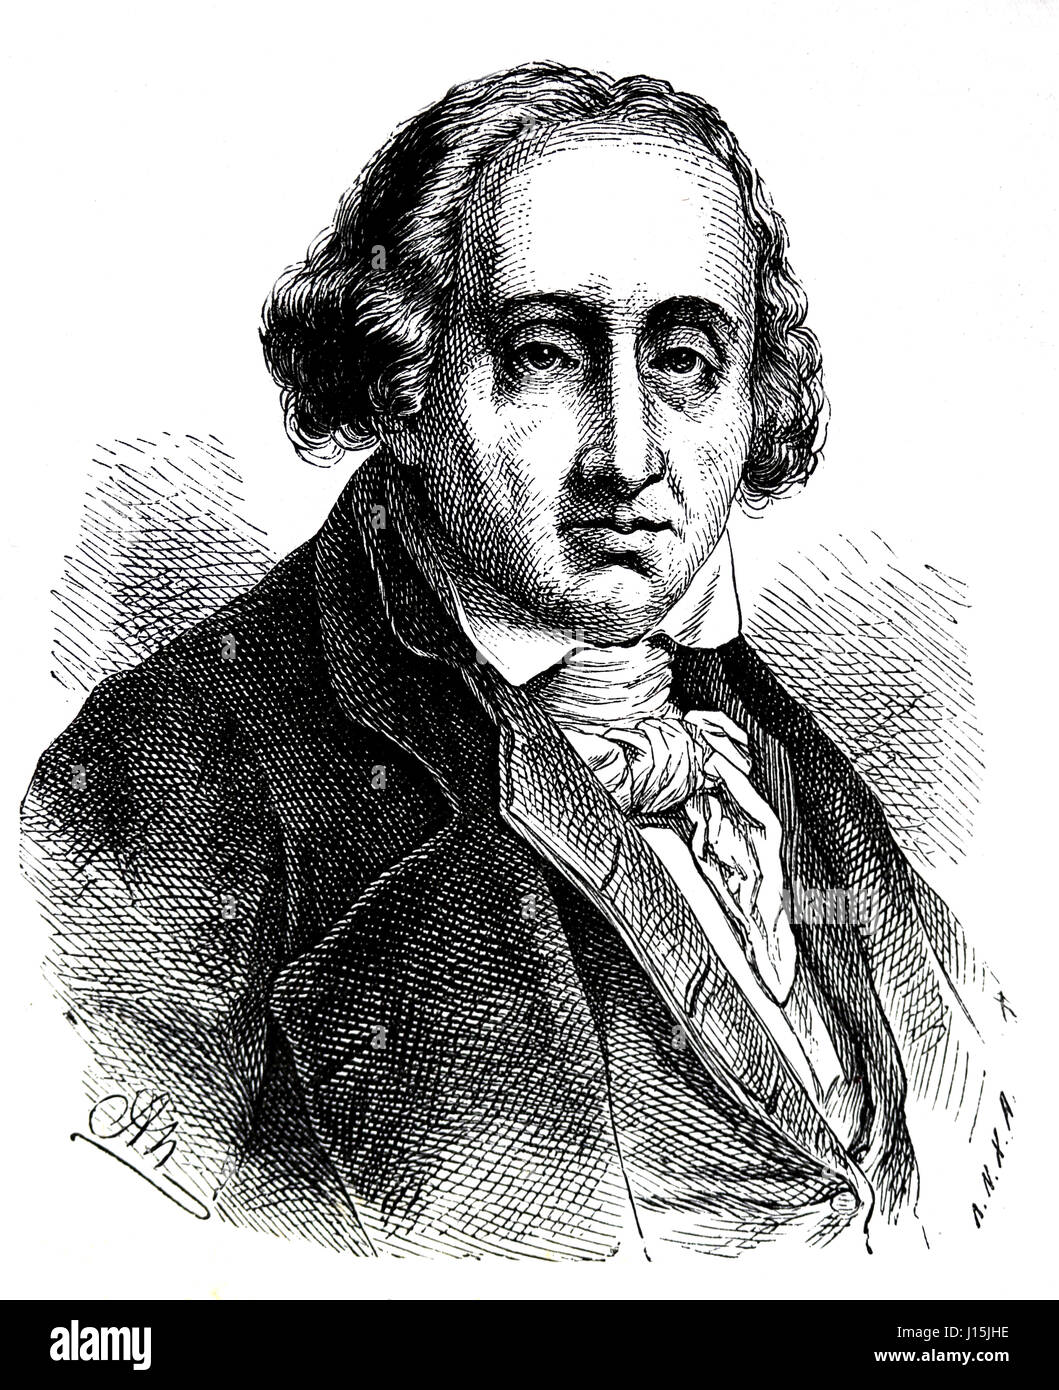 Joseph Maria Jacquard (1752-1834). Französische Händler. Erfinder des programmierbaren Webstuhl.  Gravur, Nuestro Siglo, 1883. Stockfoto